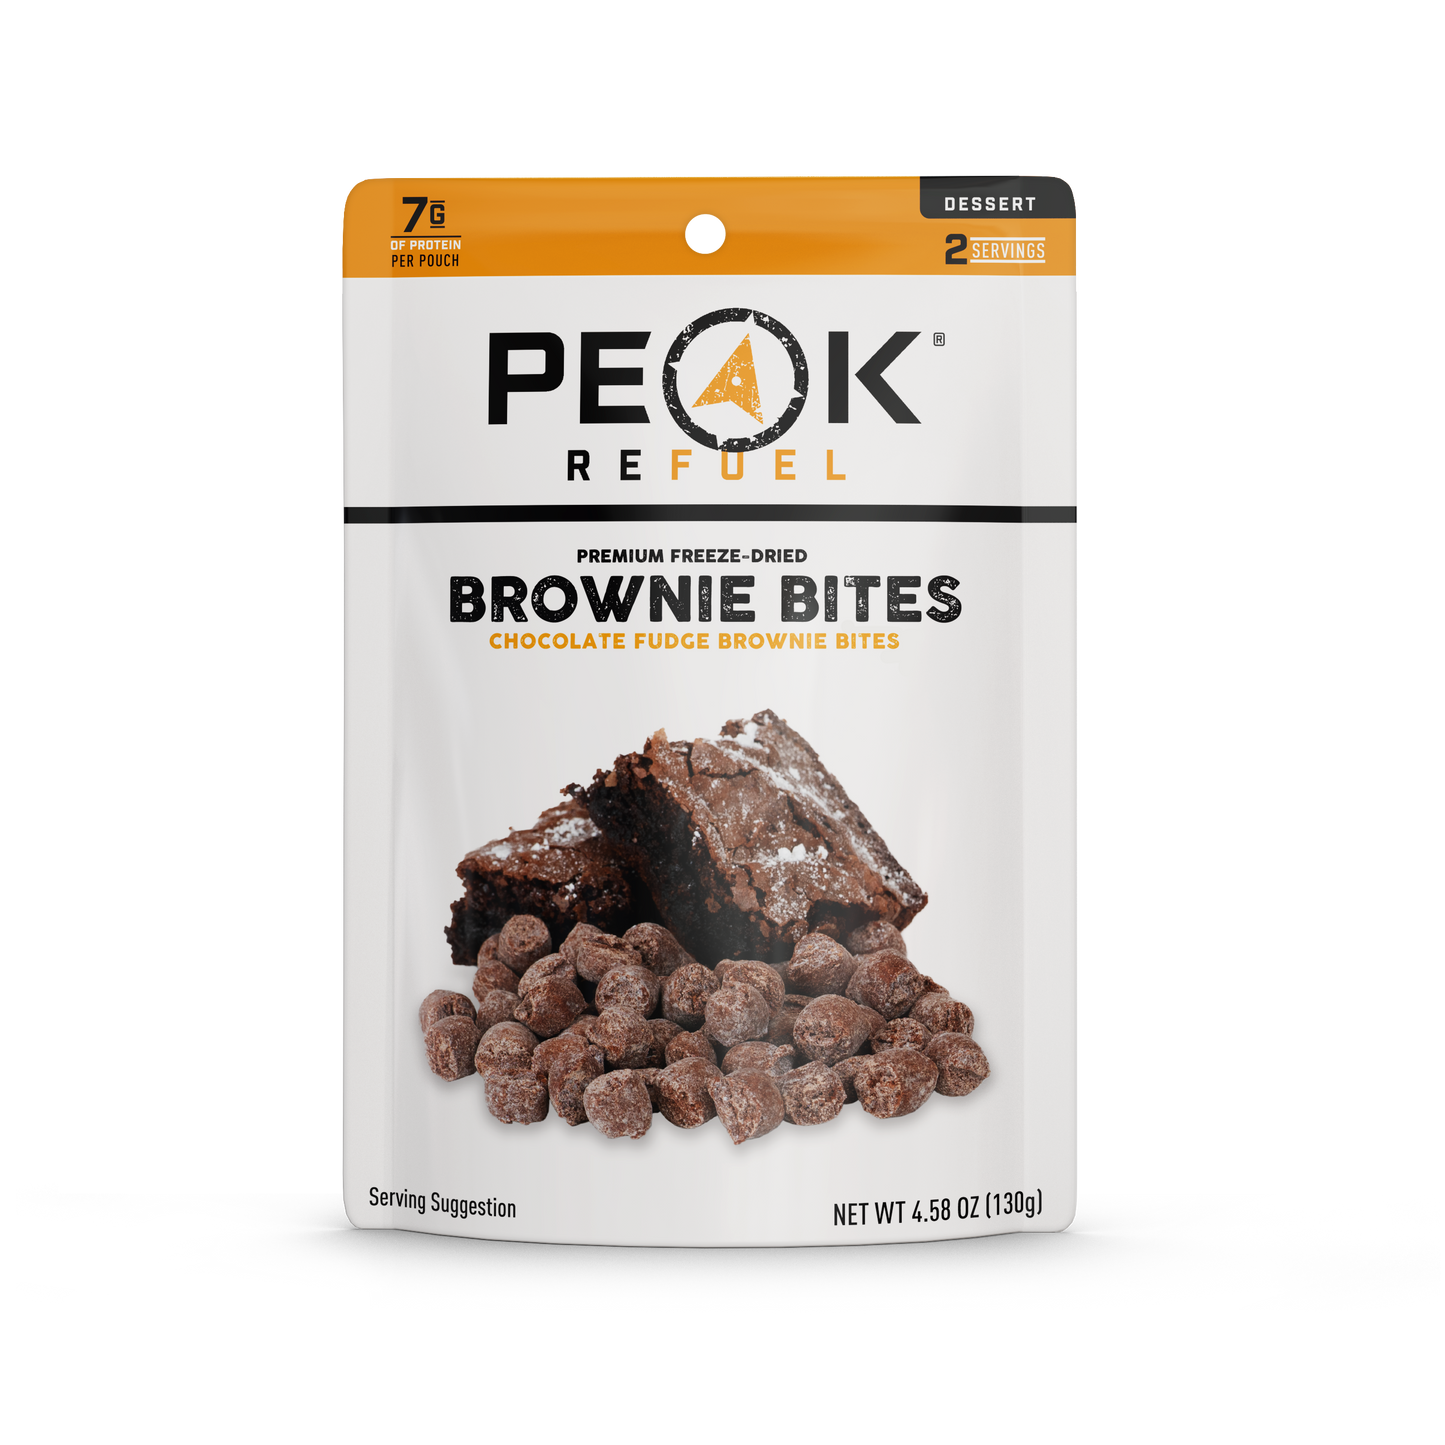 Chocolate Fudge Brownie Bites by Peak Refuel